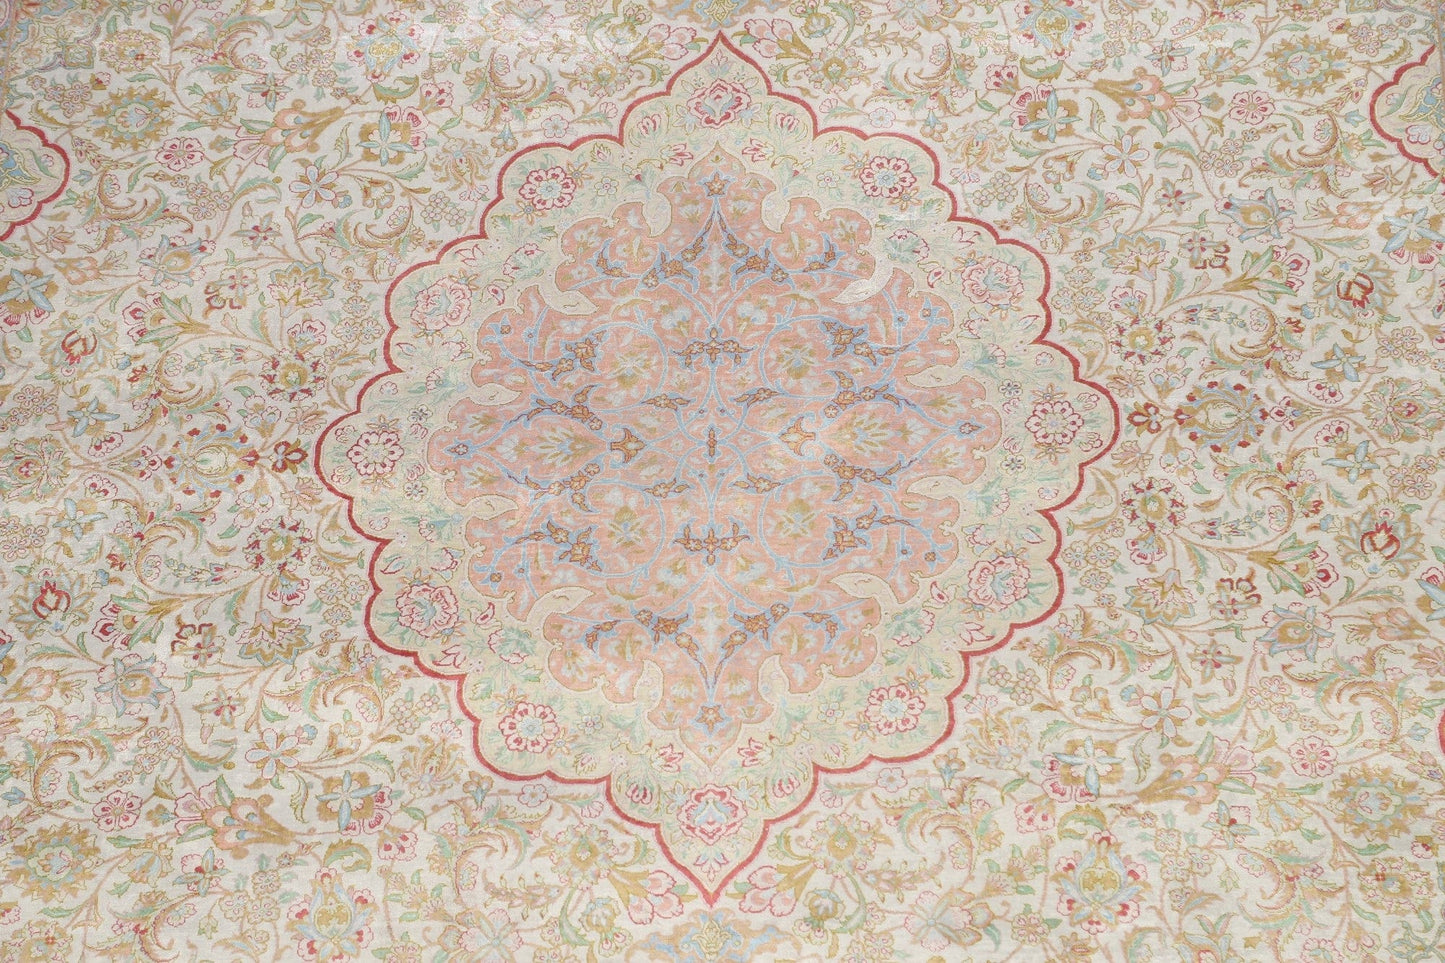 100% Silk Antique Floral Qum Persian Area Rug 6x10